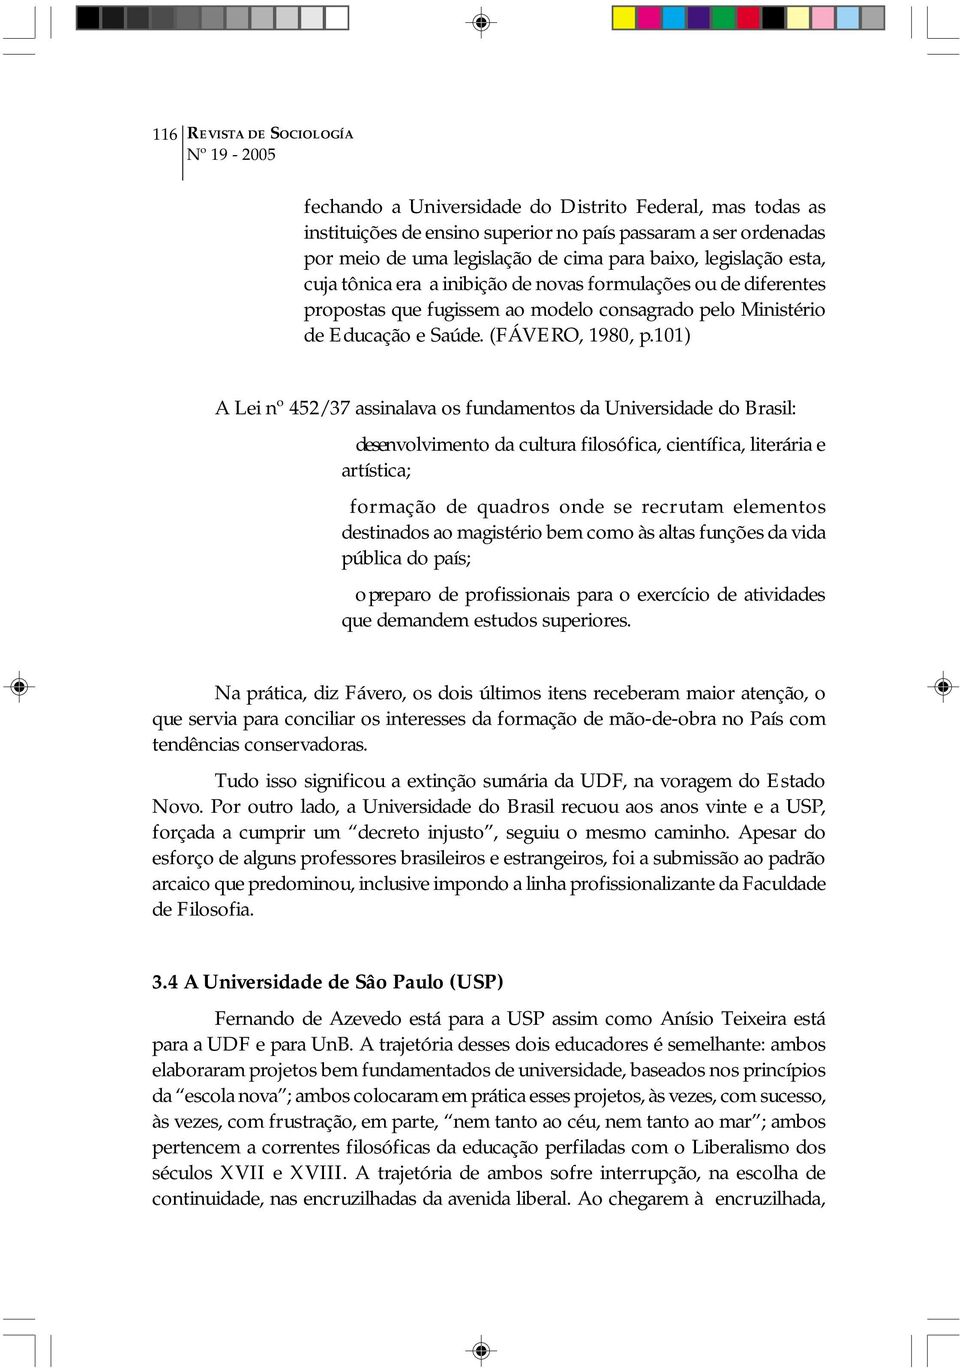 101) A Lei nº 452/37 assinalava os fundamentos da Universidade do Brasil: desenvolvimento da cultura filosófica, científica, literária e artística; formação de quadros onde se recrutam elementos